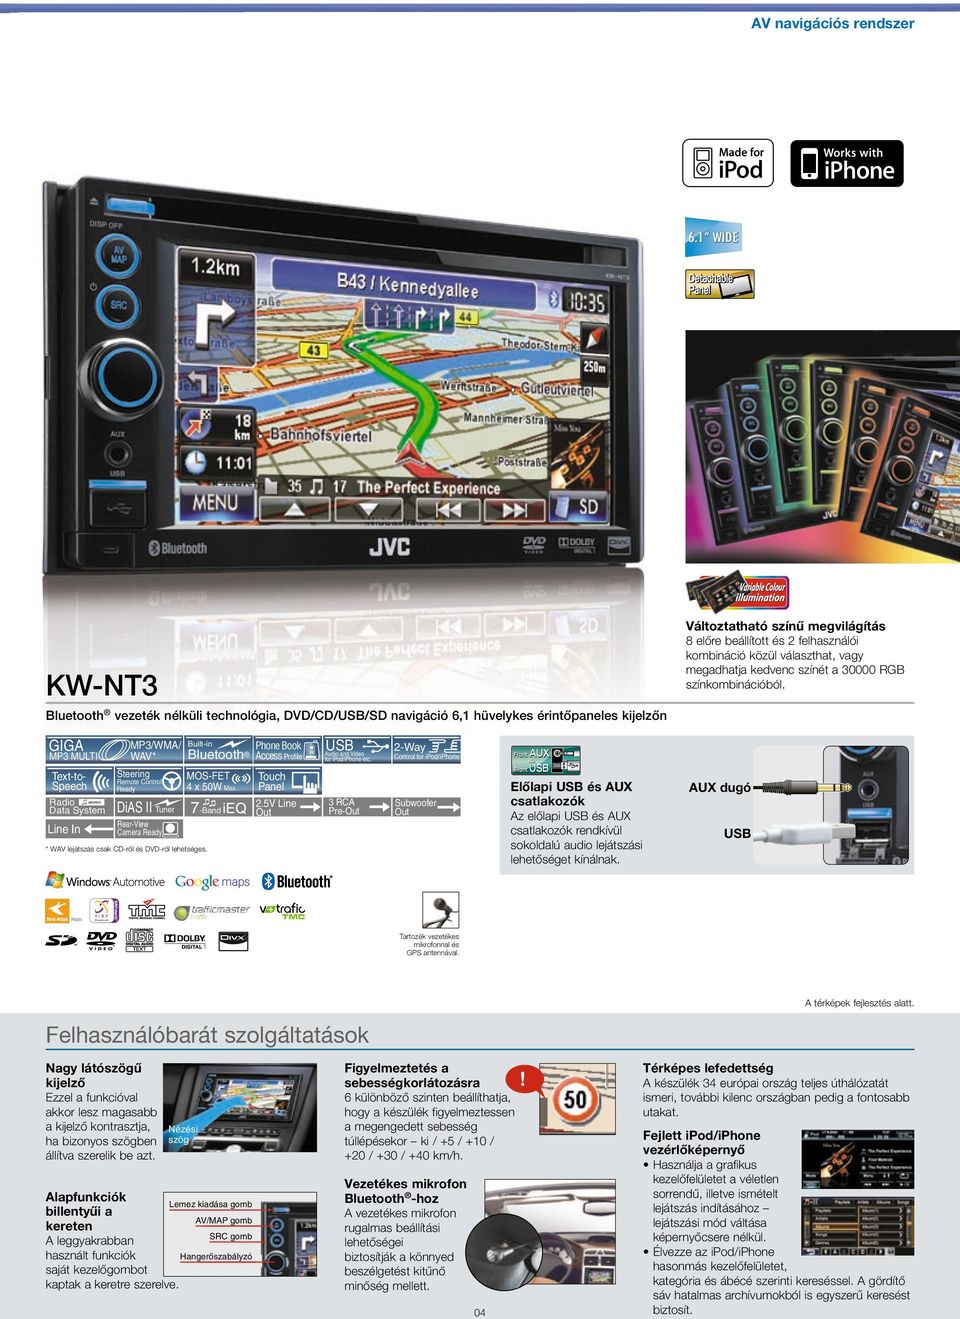 KW-NT3 vezeték nélküli technológia, DVD/CD//SD navigáció 6,1 hüvelykes érintőpaneles kijelzőn GIGA MP3/WMA/ WAV* MP3 MULTI Text-toSpeech DiAS II Tuner Line In Rear-View Camera Phone Book Access